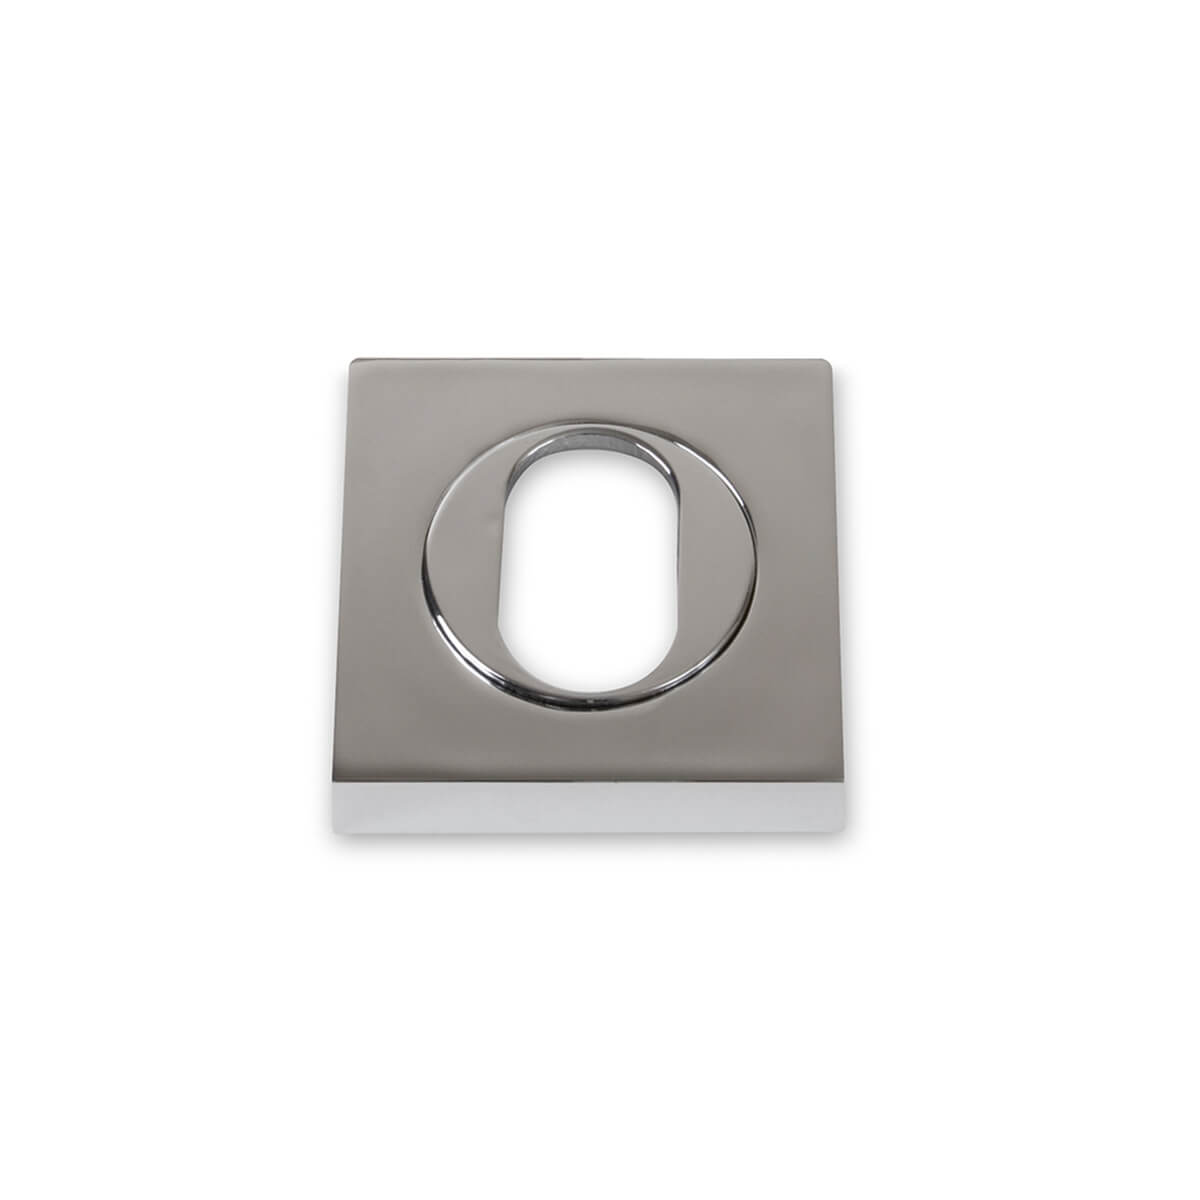 53mm Square Oval Escutcheon - Chrome Plate